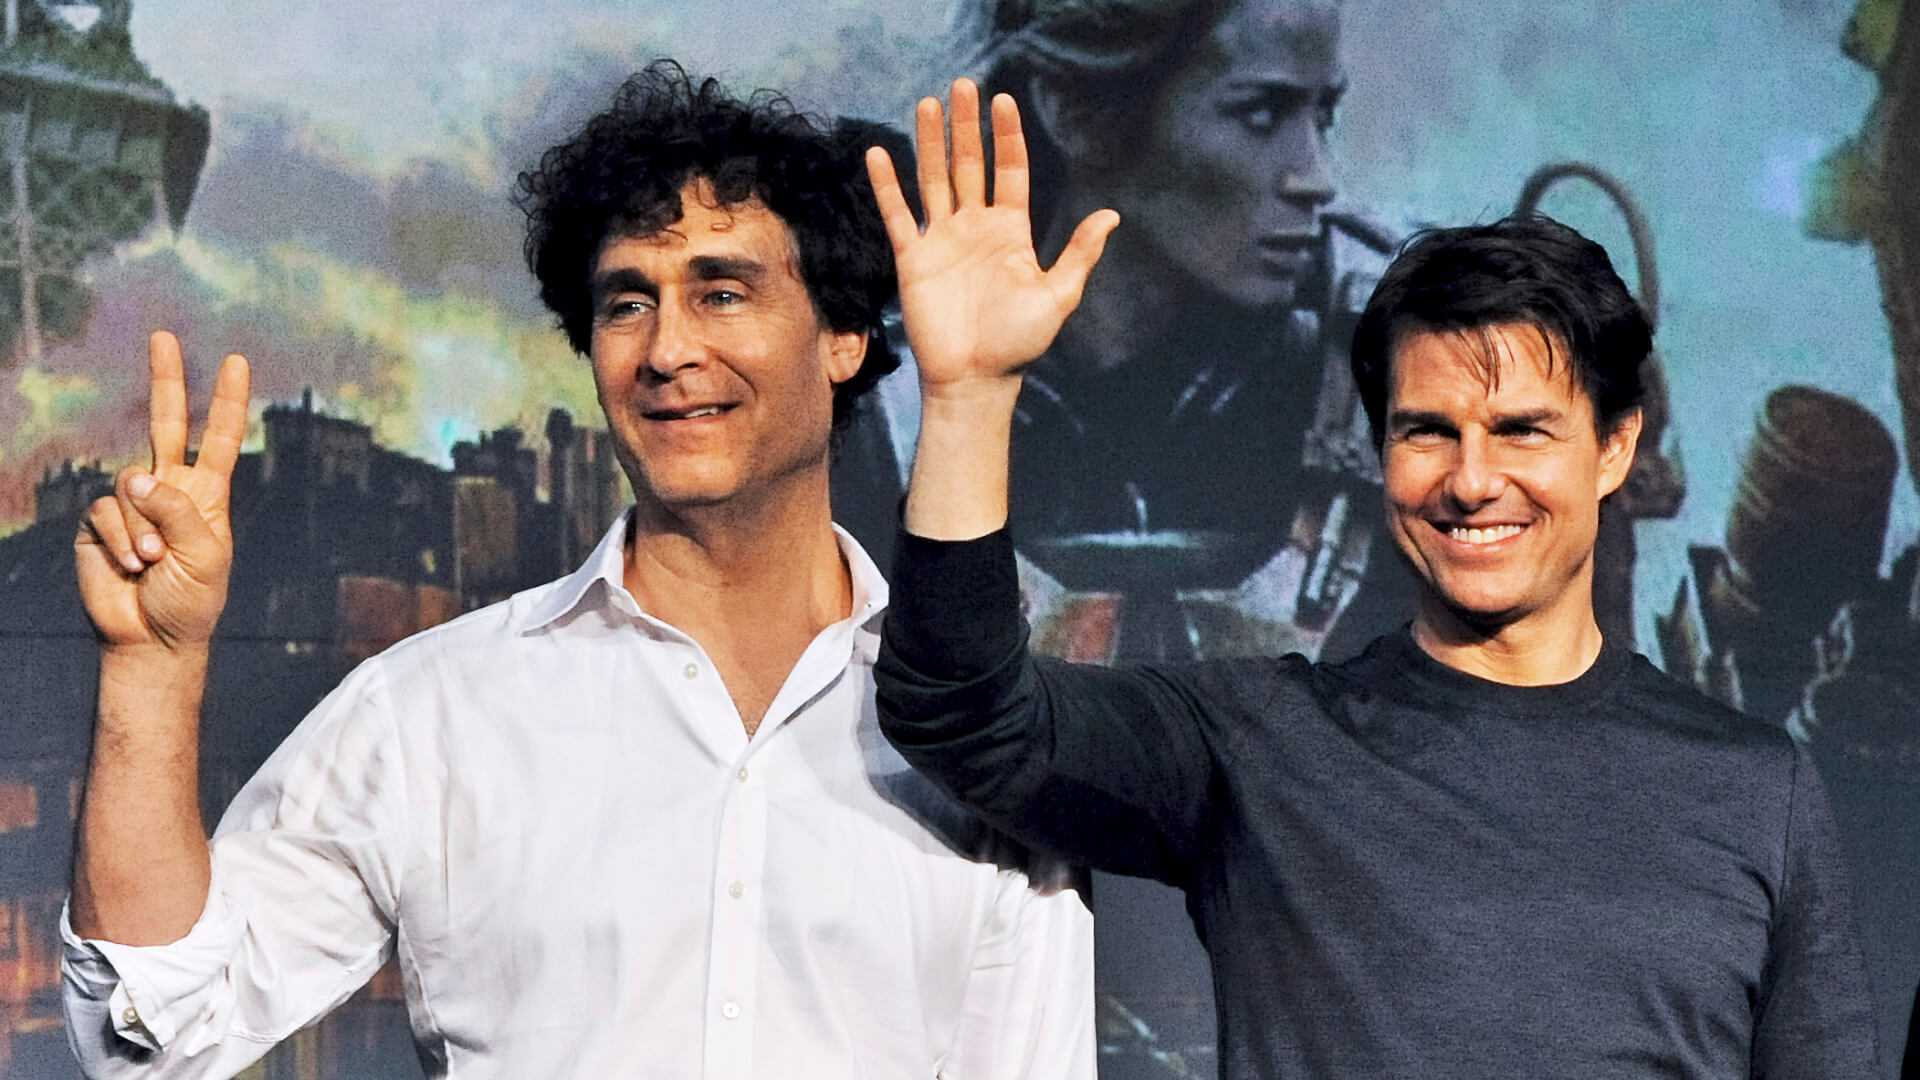 Tom Cruise és Doug Liman rendező űrben játszódó filmjét a Universal Pictures fogja bemutatni